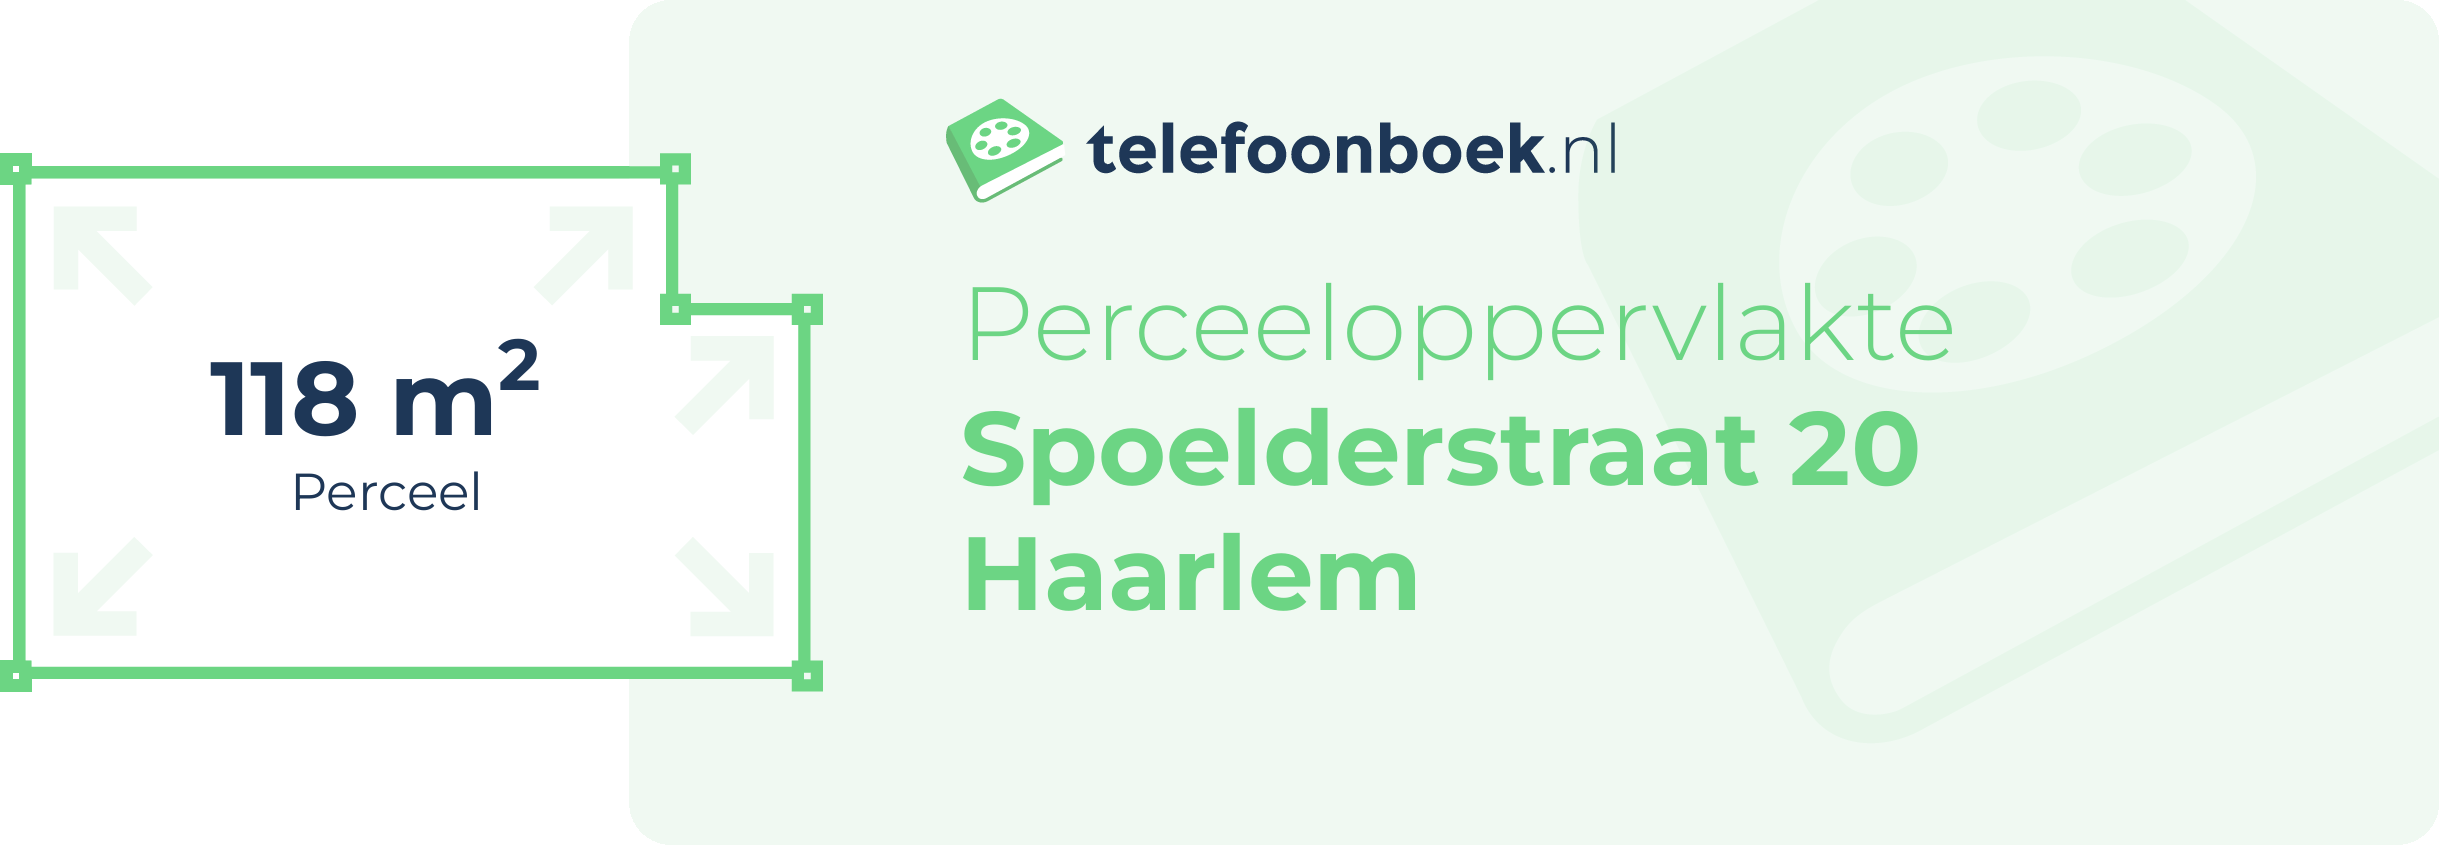 Perceeloppervlakte Spoelderstraat 20 Haarlem